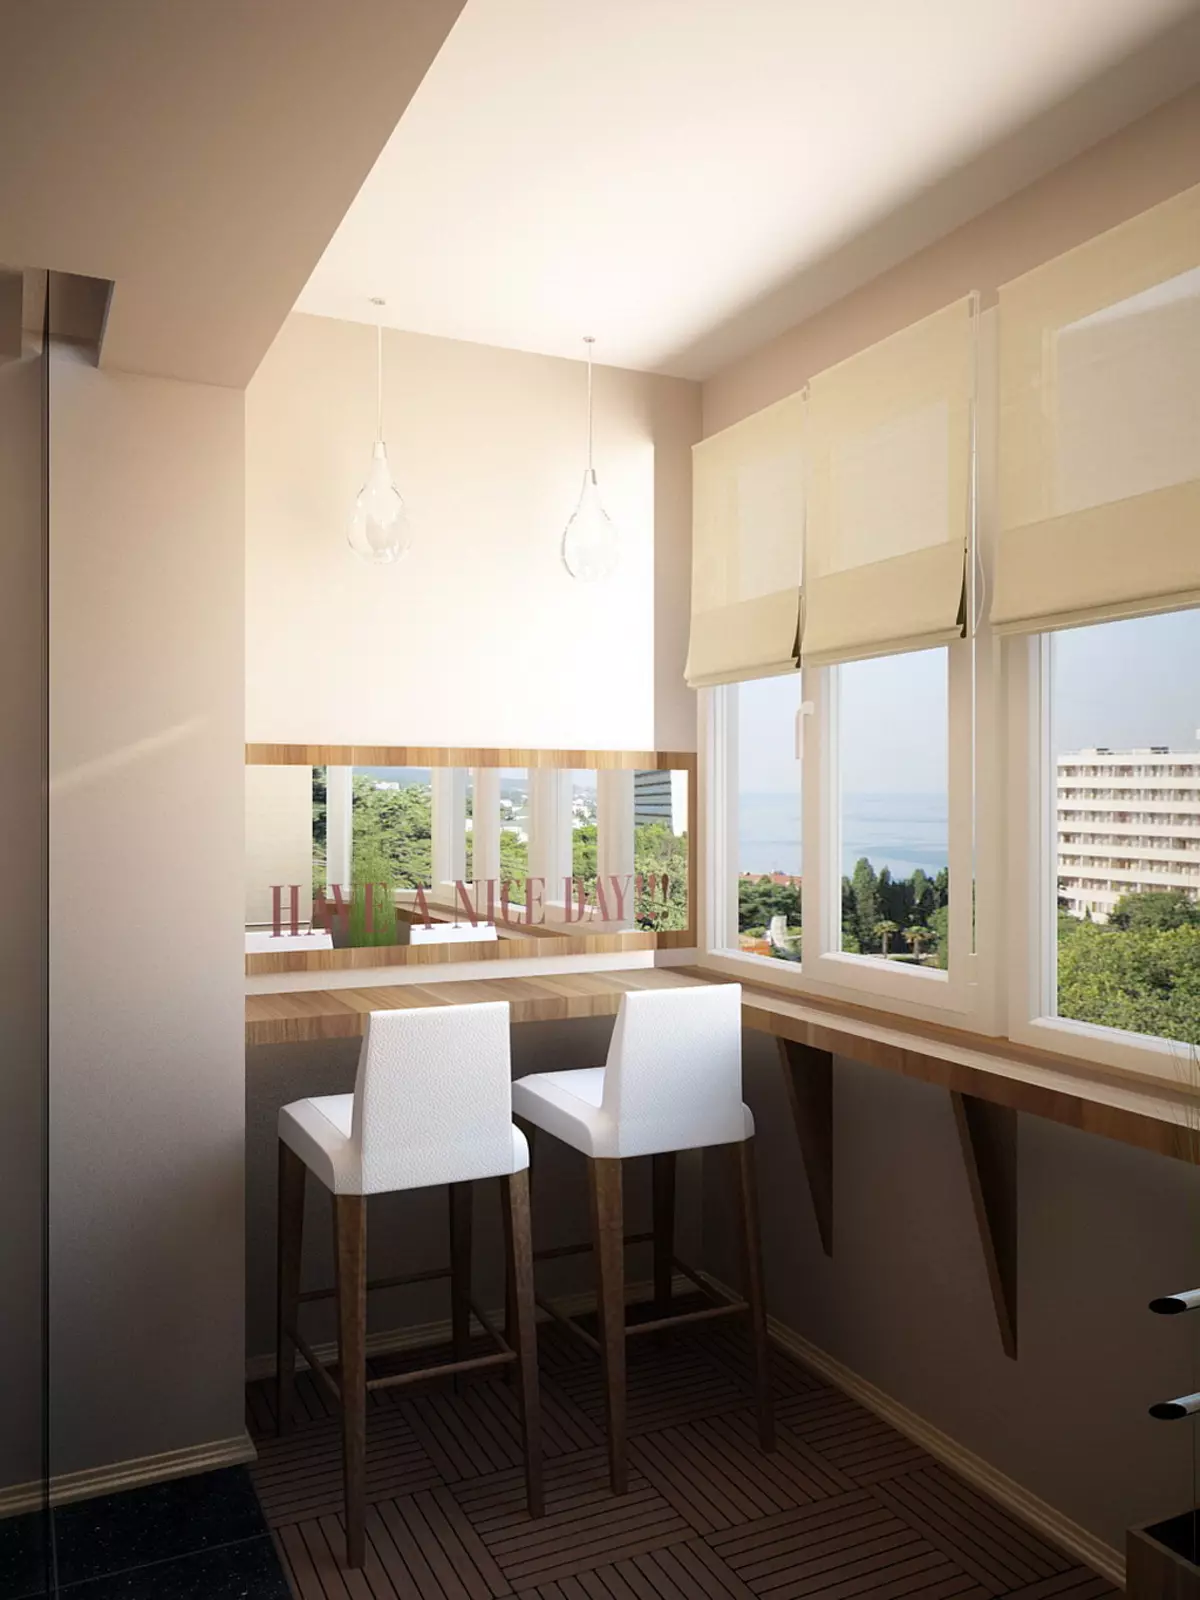 Дизайн балкона кухни фото. Обеденная зона на балконе. Кухня на лоджии. Кухня совмещенная с балконом. Кухня с панорамным балконом.